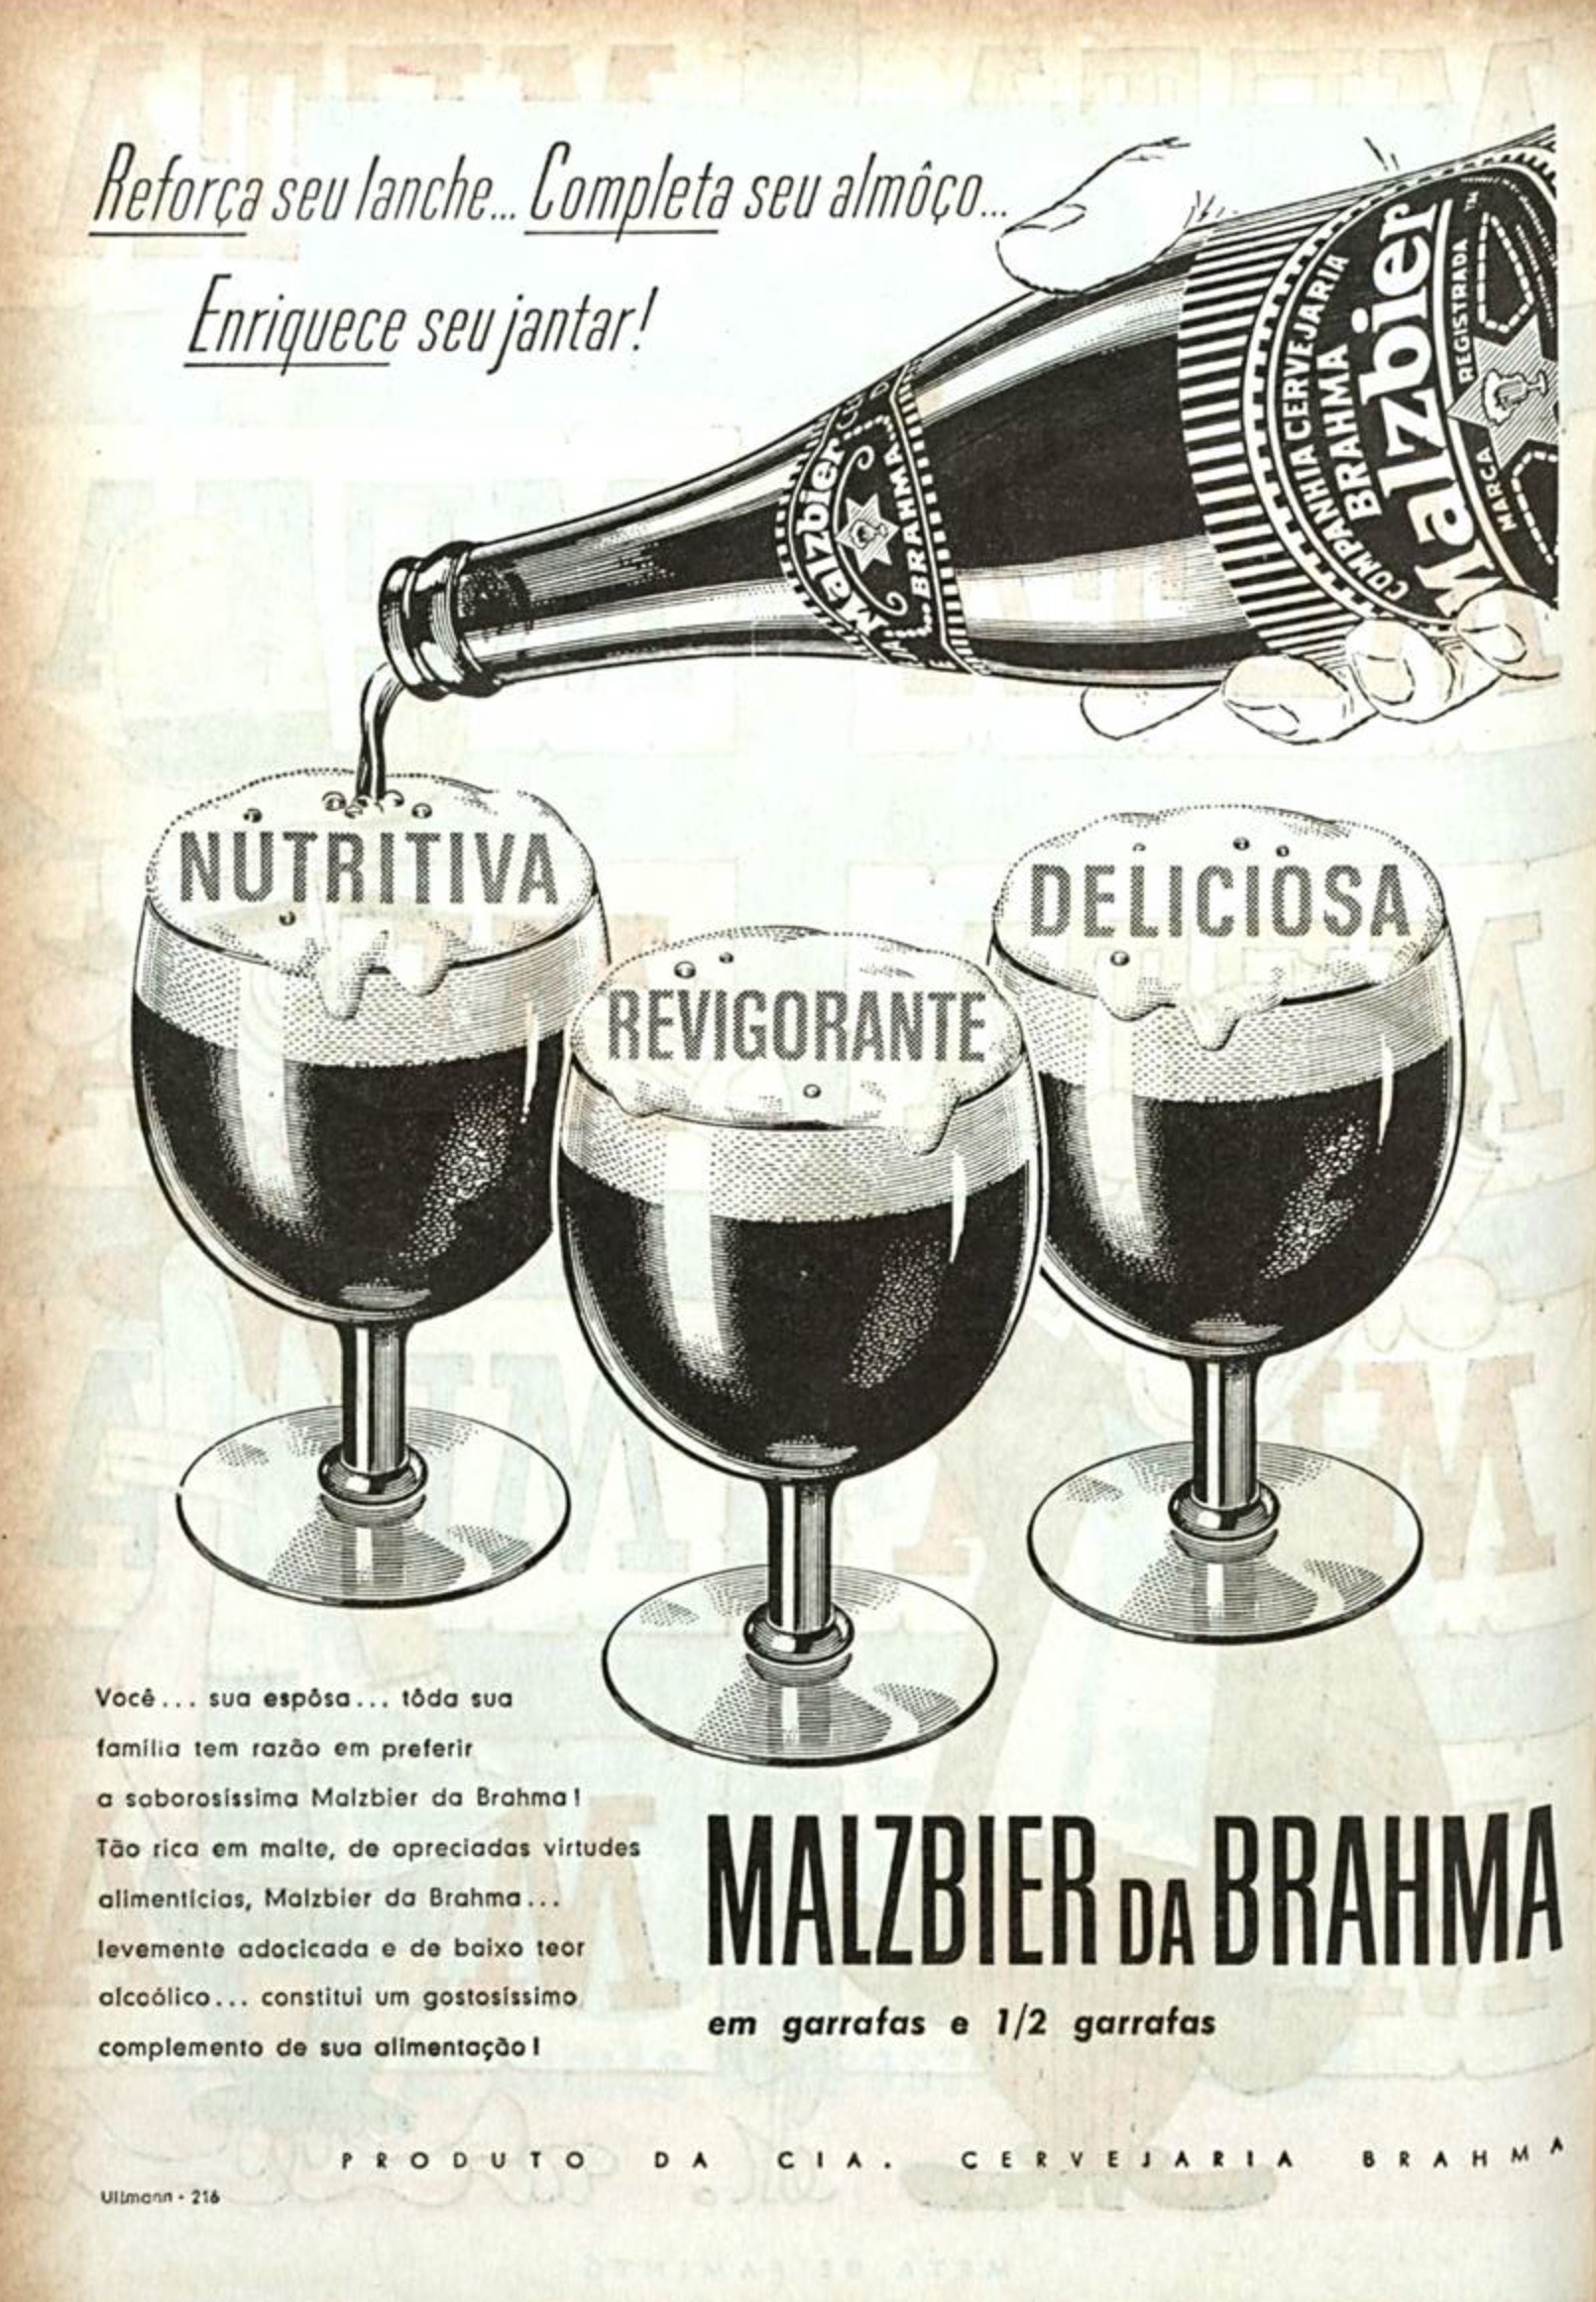 Anúncio veiculado em 1960 apresentando os benefícios para a saúde após consumir a cerveja Malzbier